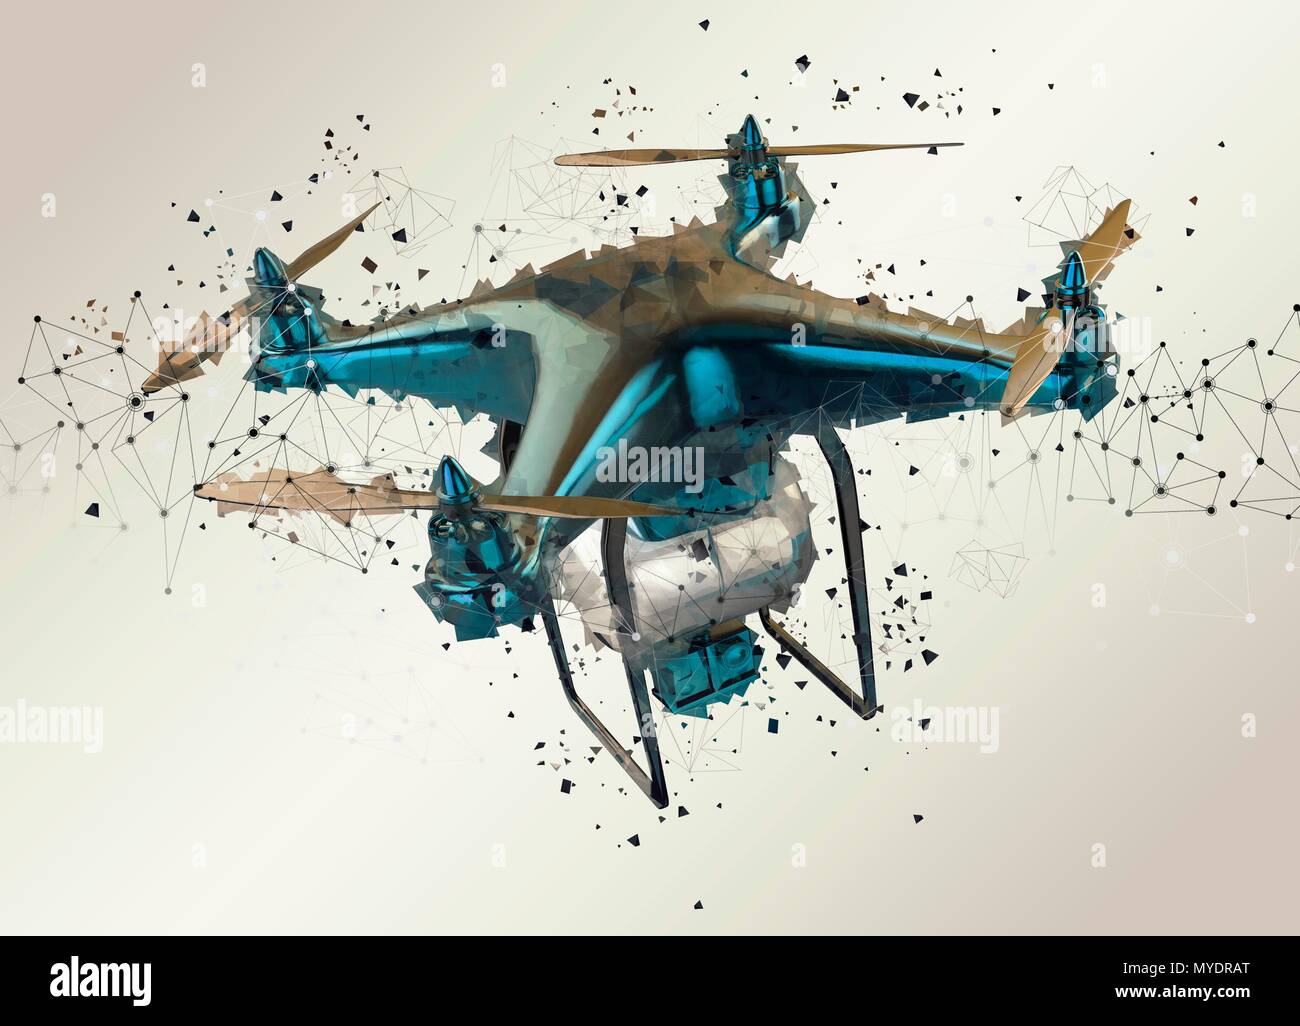 Vehículo aéreo no tripulado, ilustración. Foto de stock